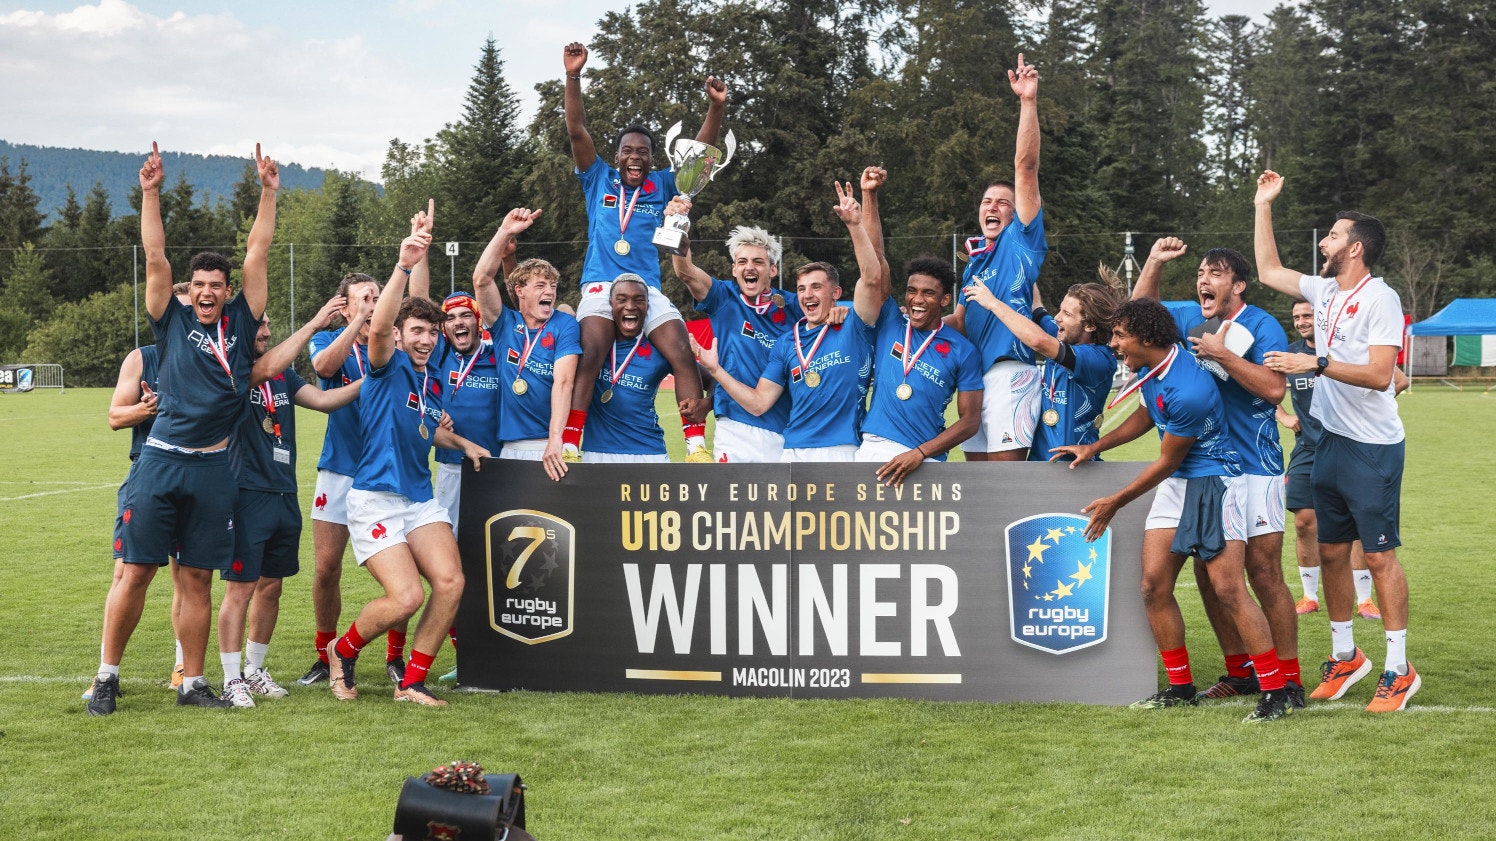 Rugby Europe Sevens U18 Championship - also der Europameisterschaft im 7er Rugby der unter 18 Jährigen Jungs - welche am  Wochenende vom 15-16 Juli in Magglingen stattfindet.


Foto: BASPO / Charlène Mamie